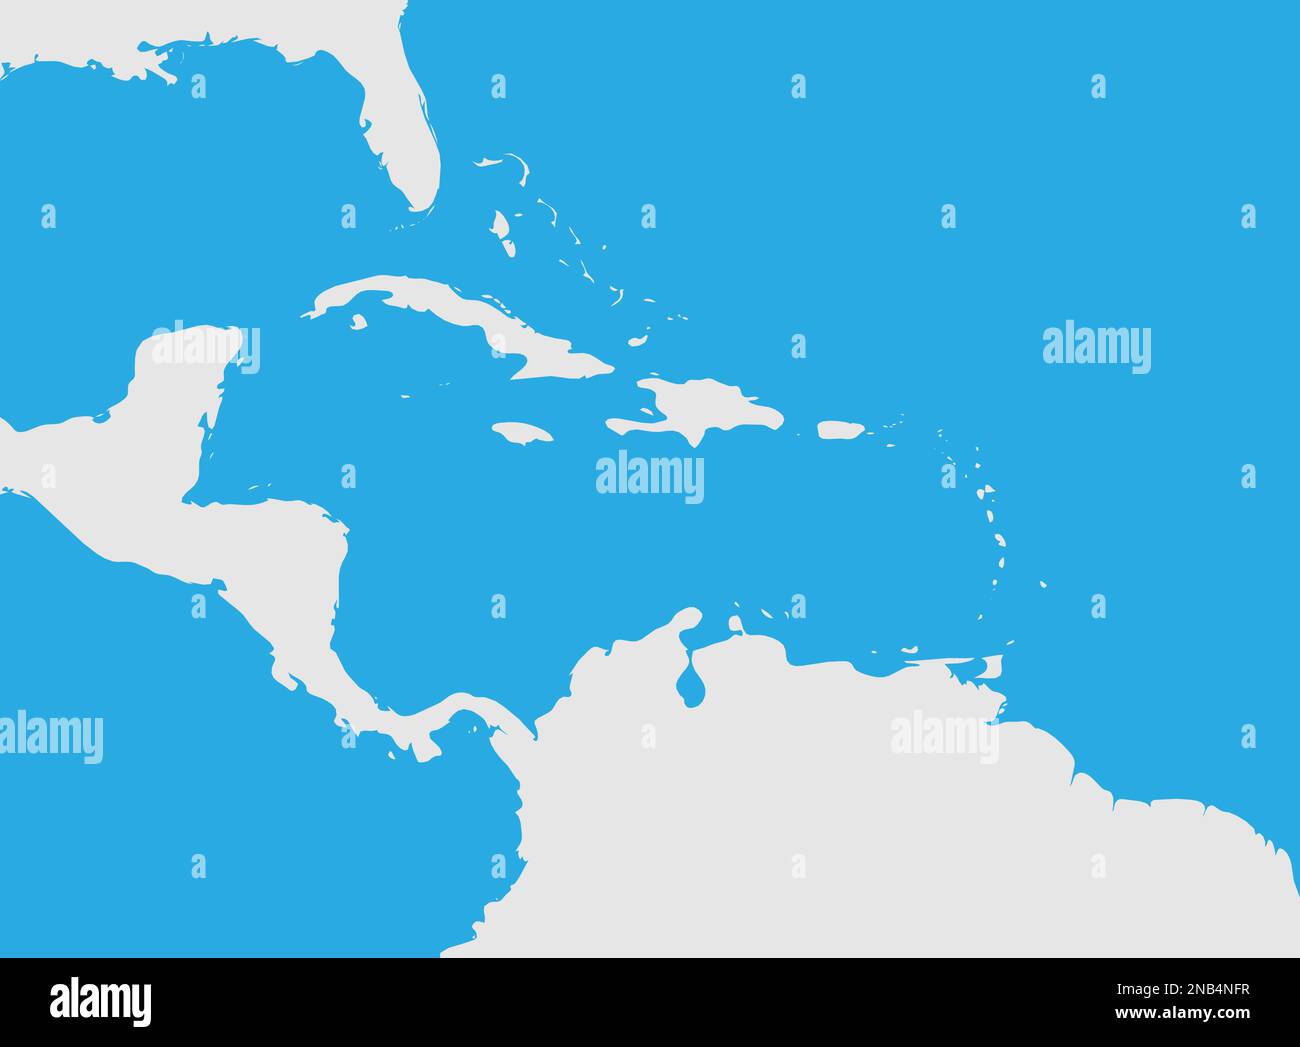 Mapa de la región del Caribe y América Central. Silueta de tierra gris y fondo de agua azul. Ilustración vectorial plana simple. Ilustración del Vector